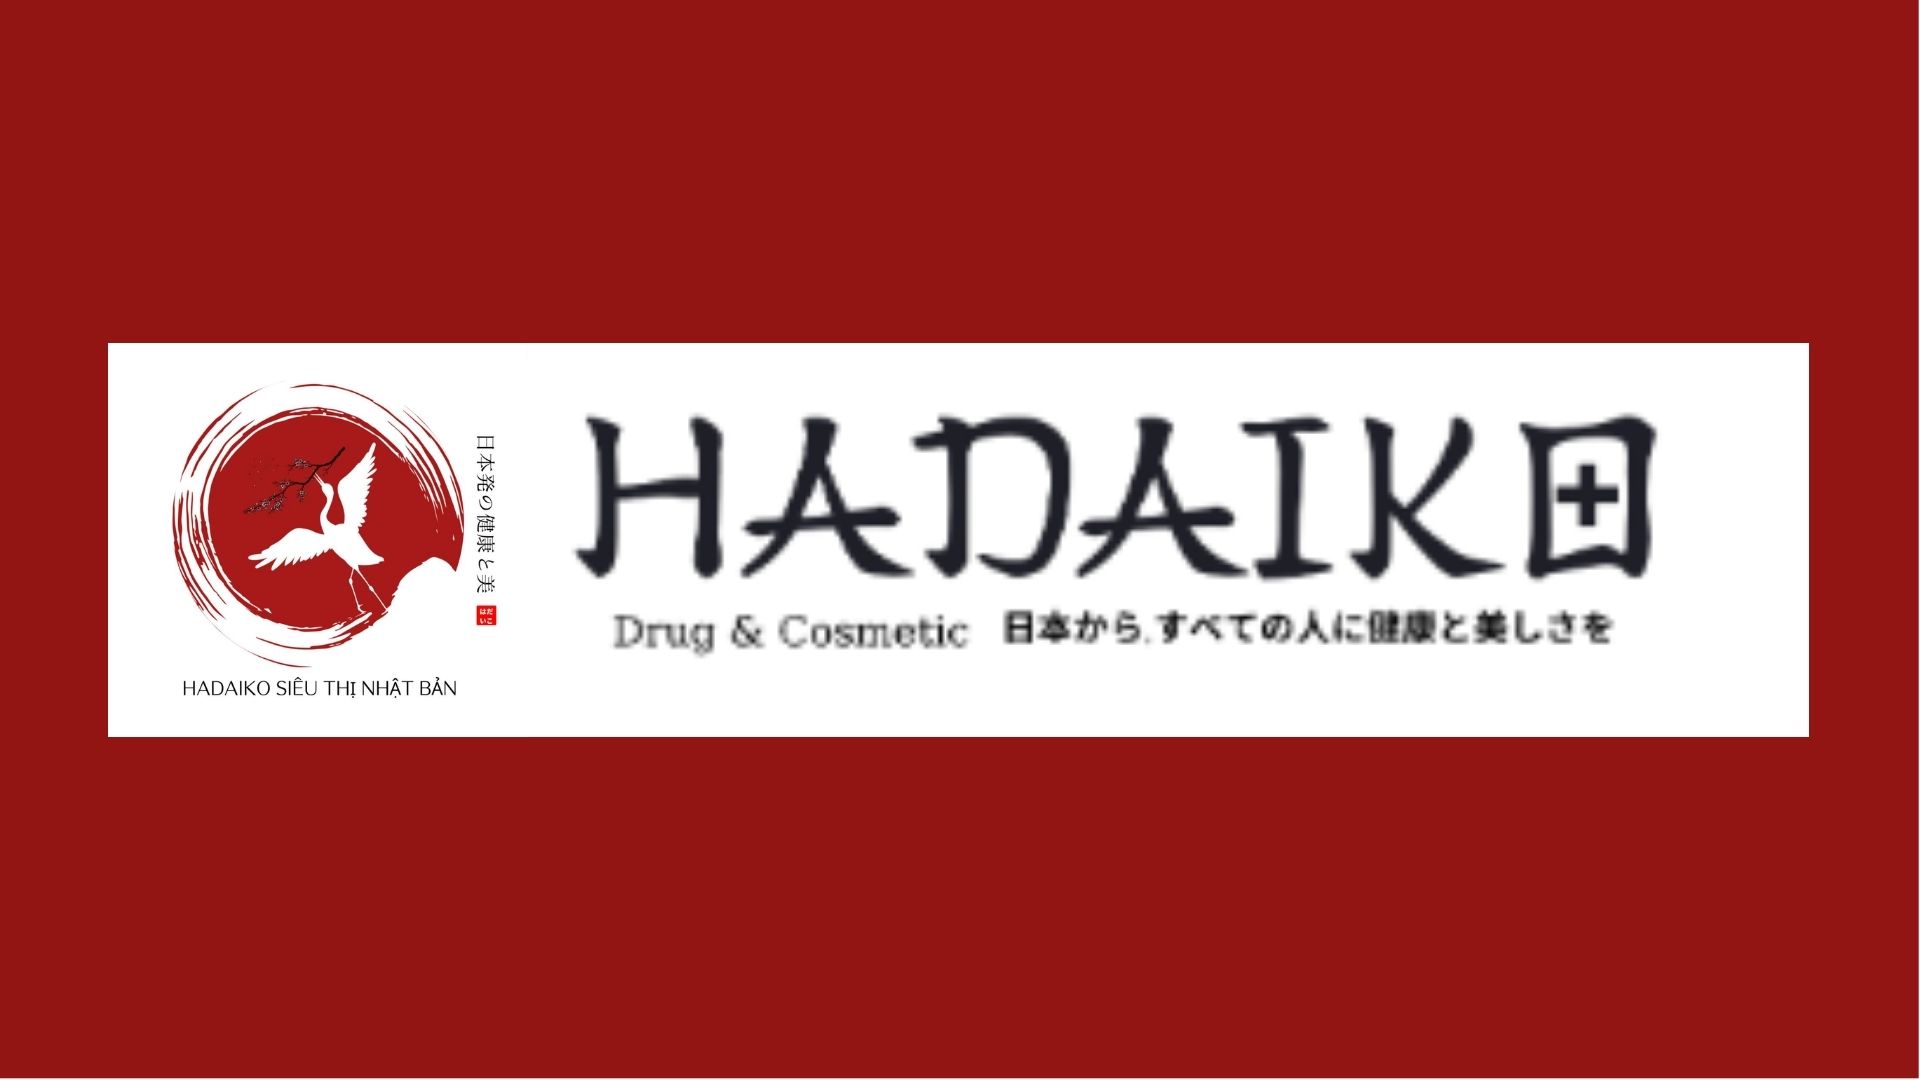 Hadaiko là một thương hiệu lâu năm trong ngành làm đẹp đến từ Nhật Bản (Nguồn: Internet)